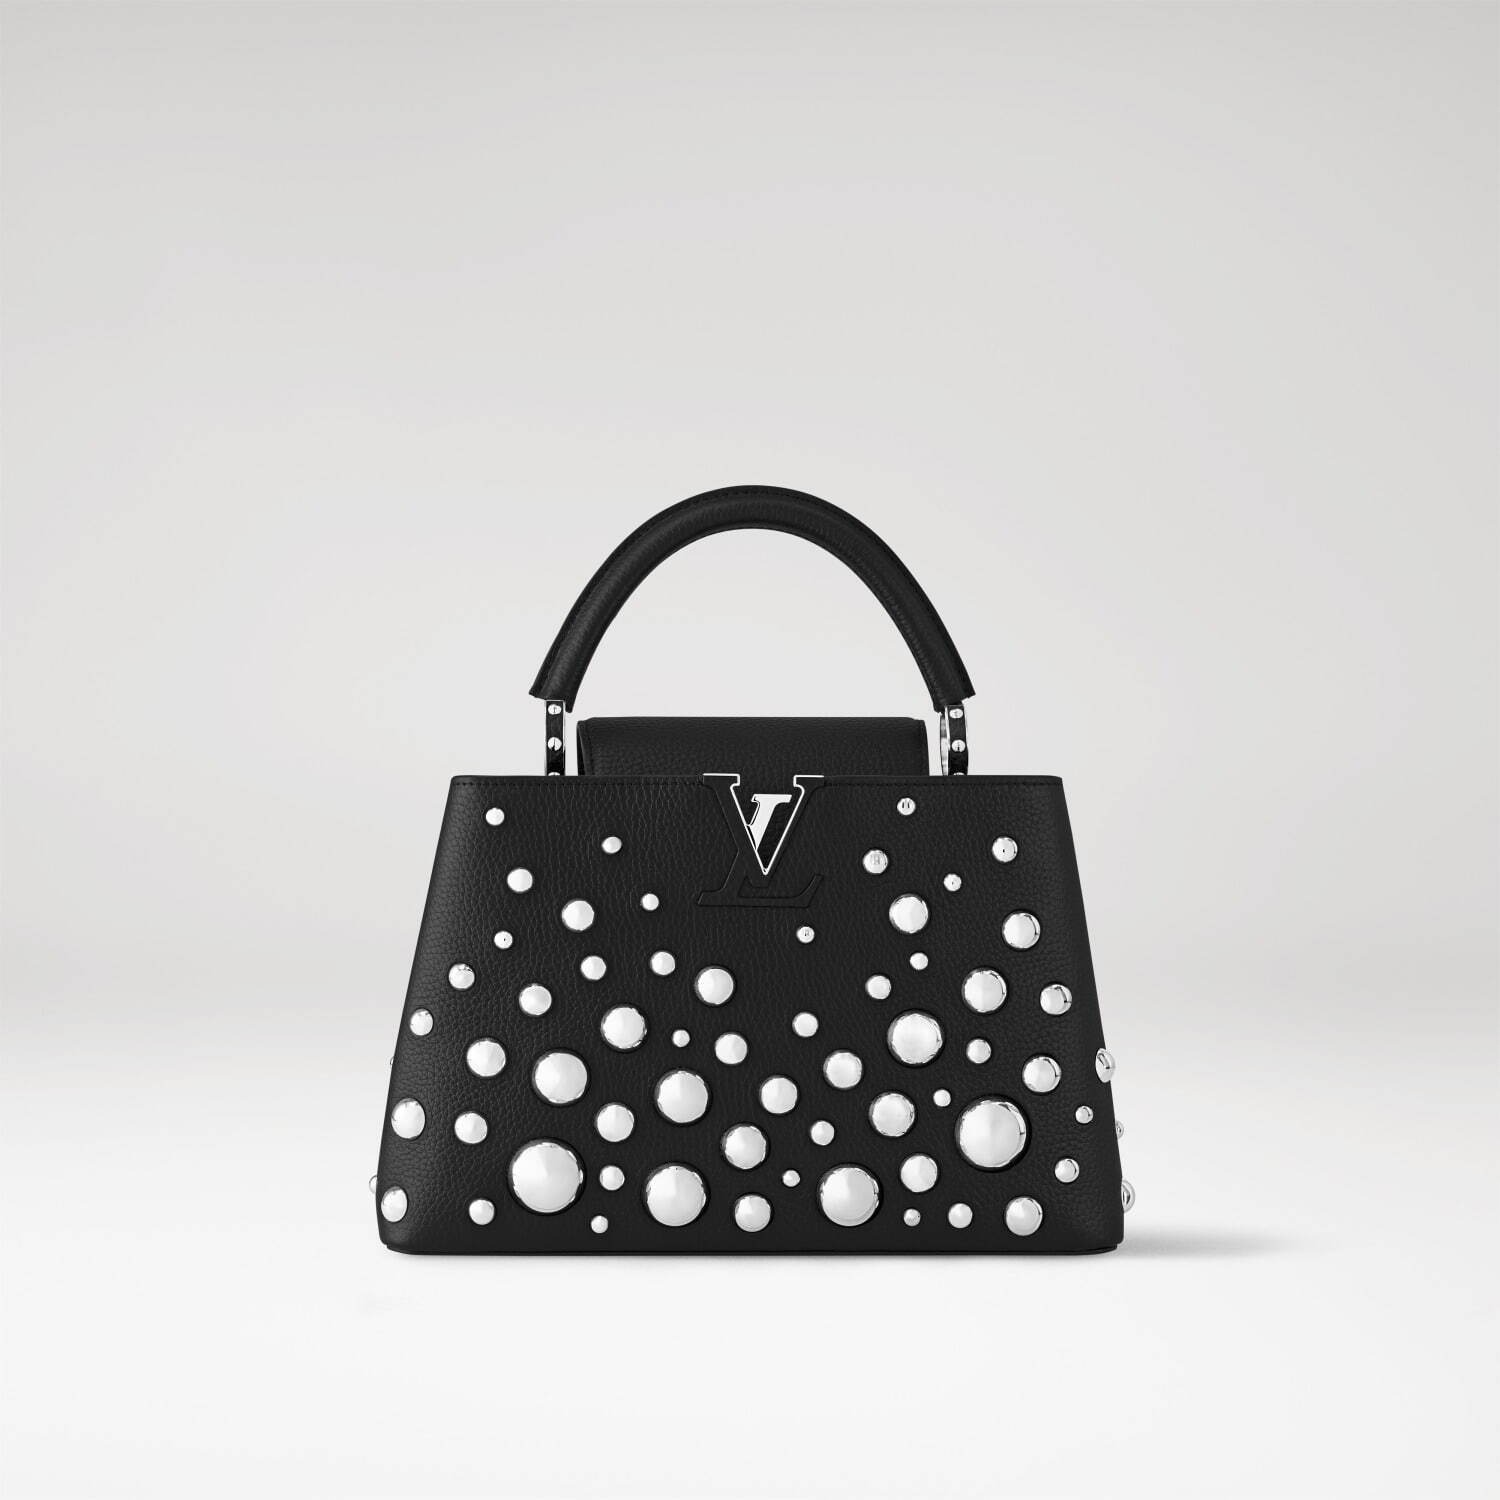 Louis Vuitton x Yayoi Kusama Infinity Dots Bikini Bottoms Black/White